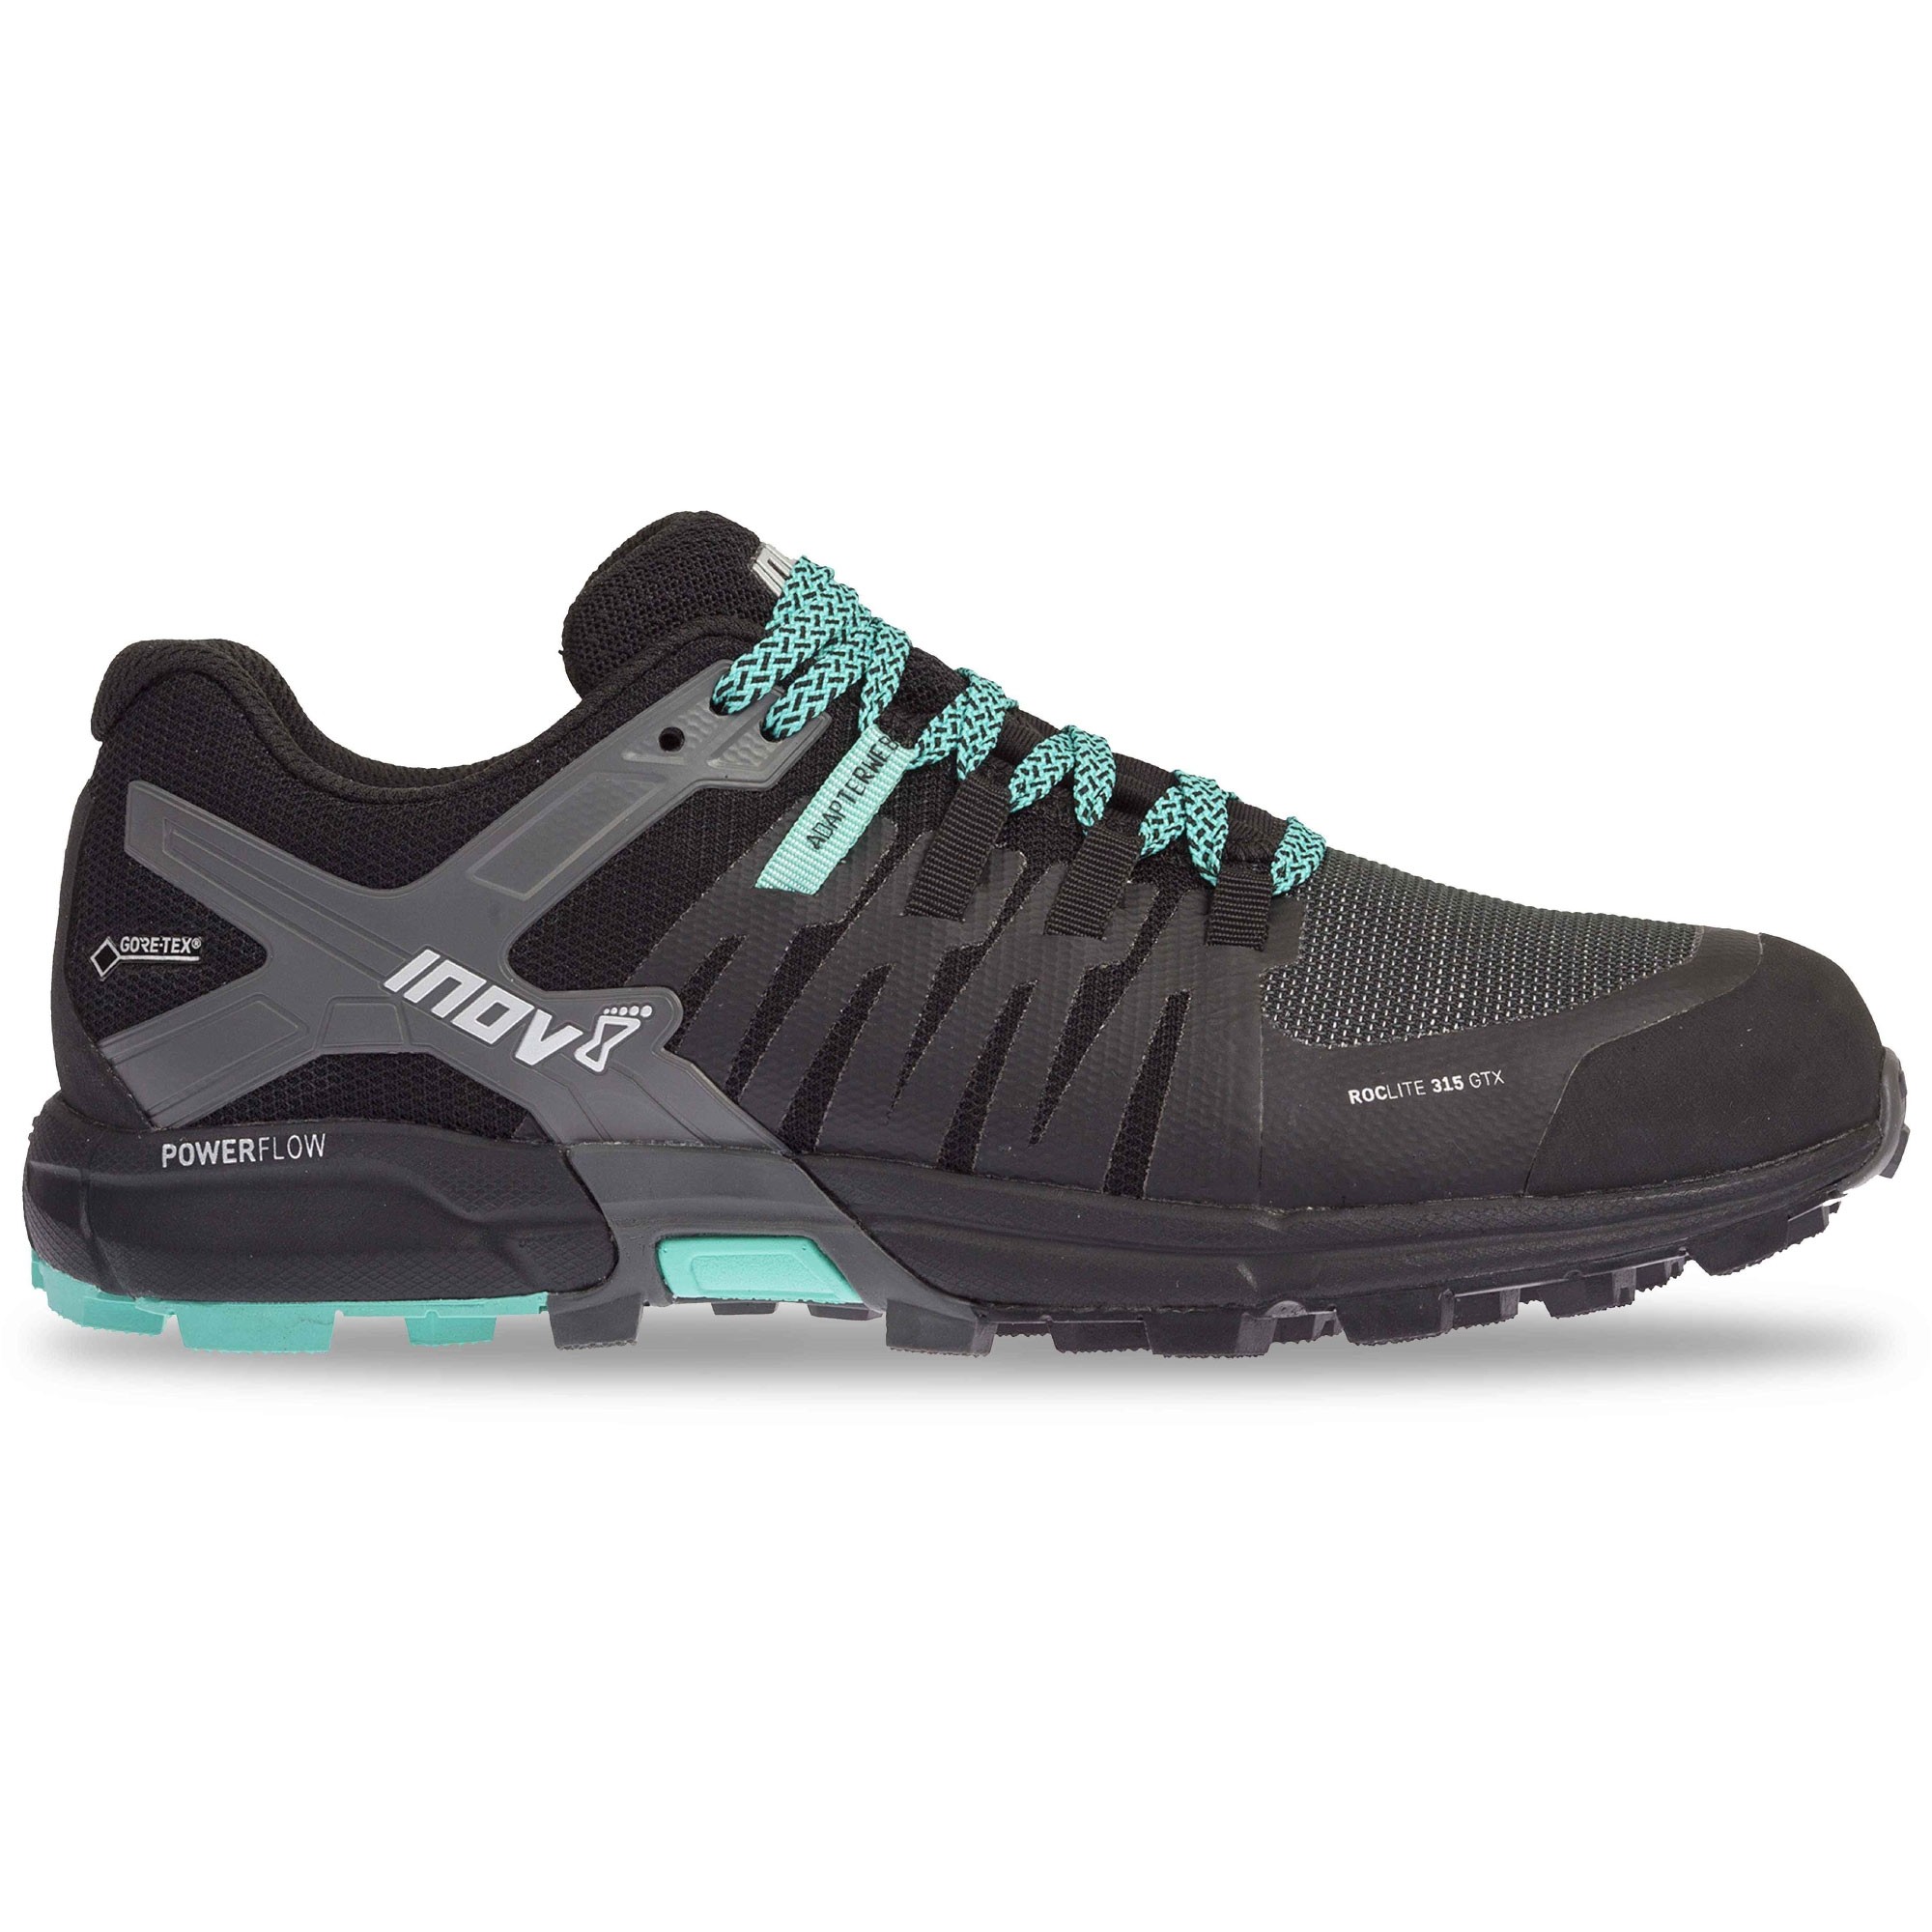 INOV8 Roclite 315 GTX Waterproof Running Shoes - Black/Teal